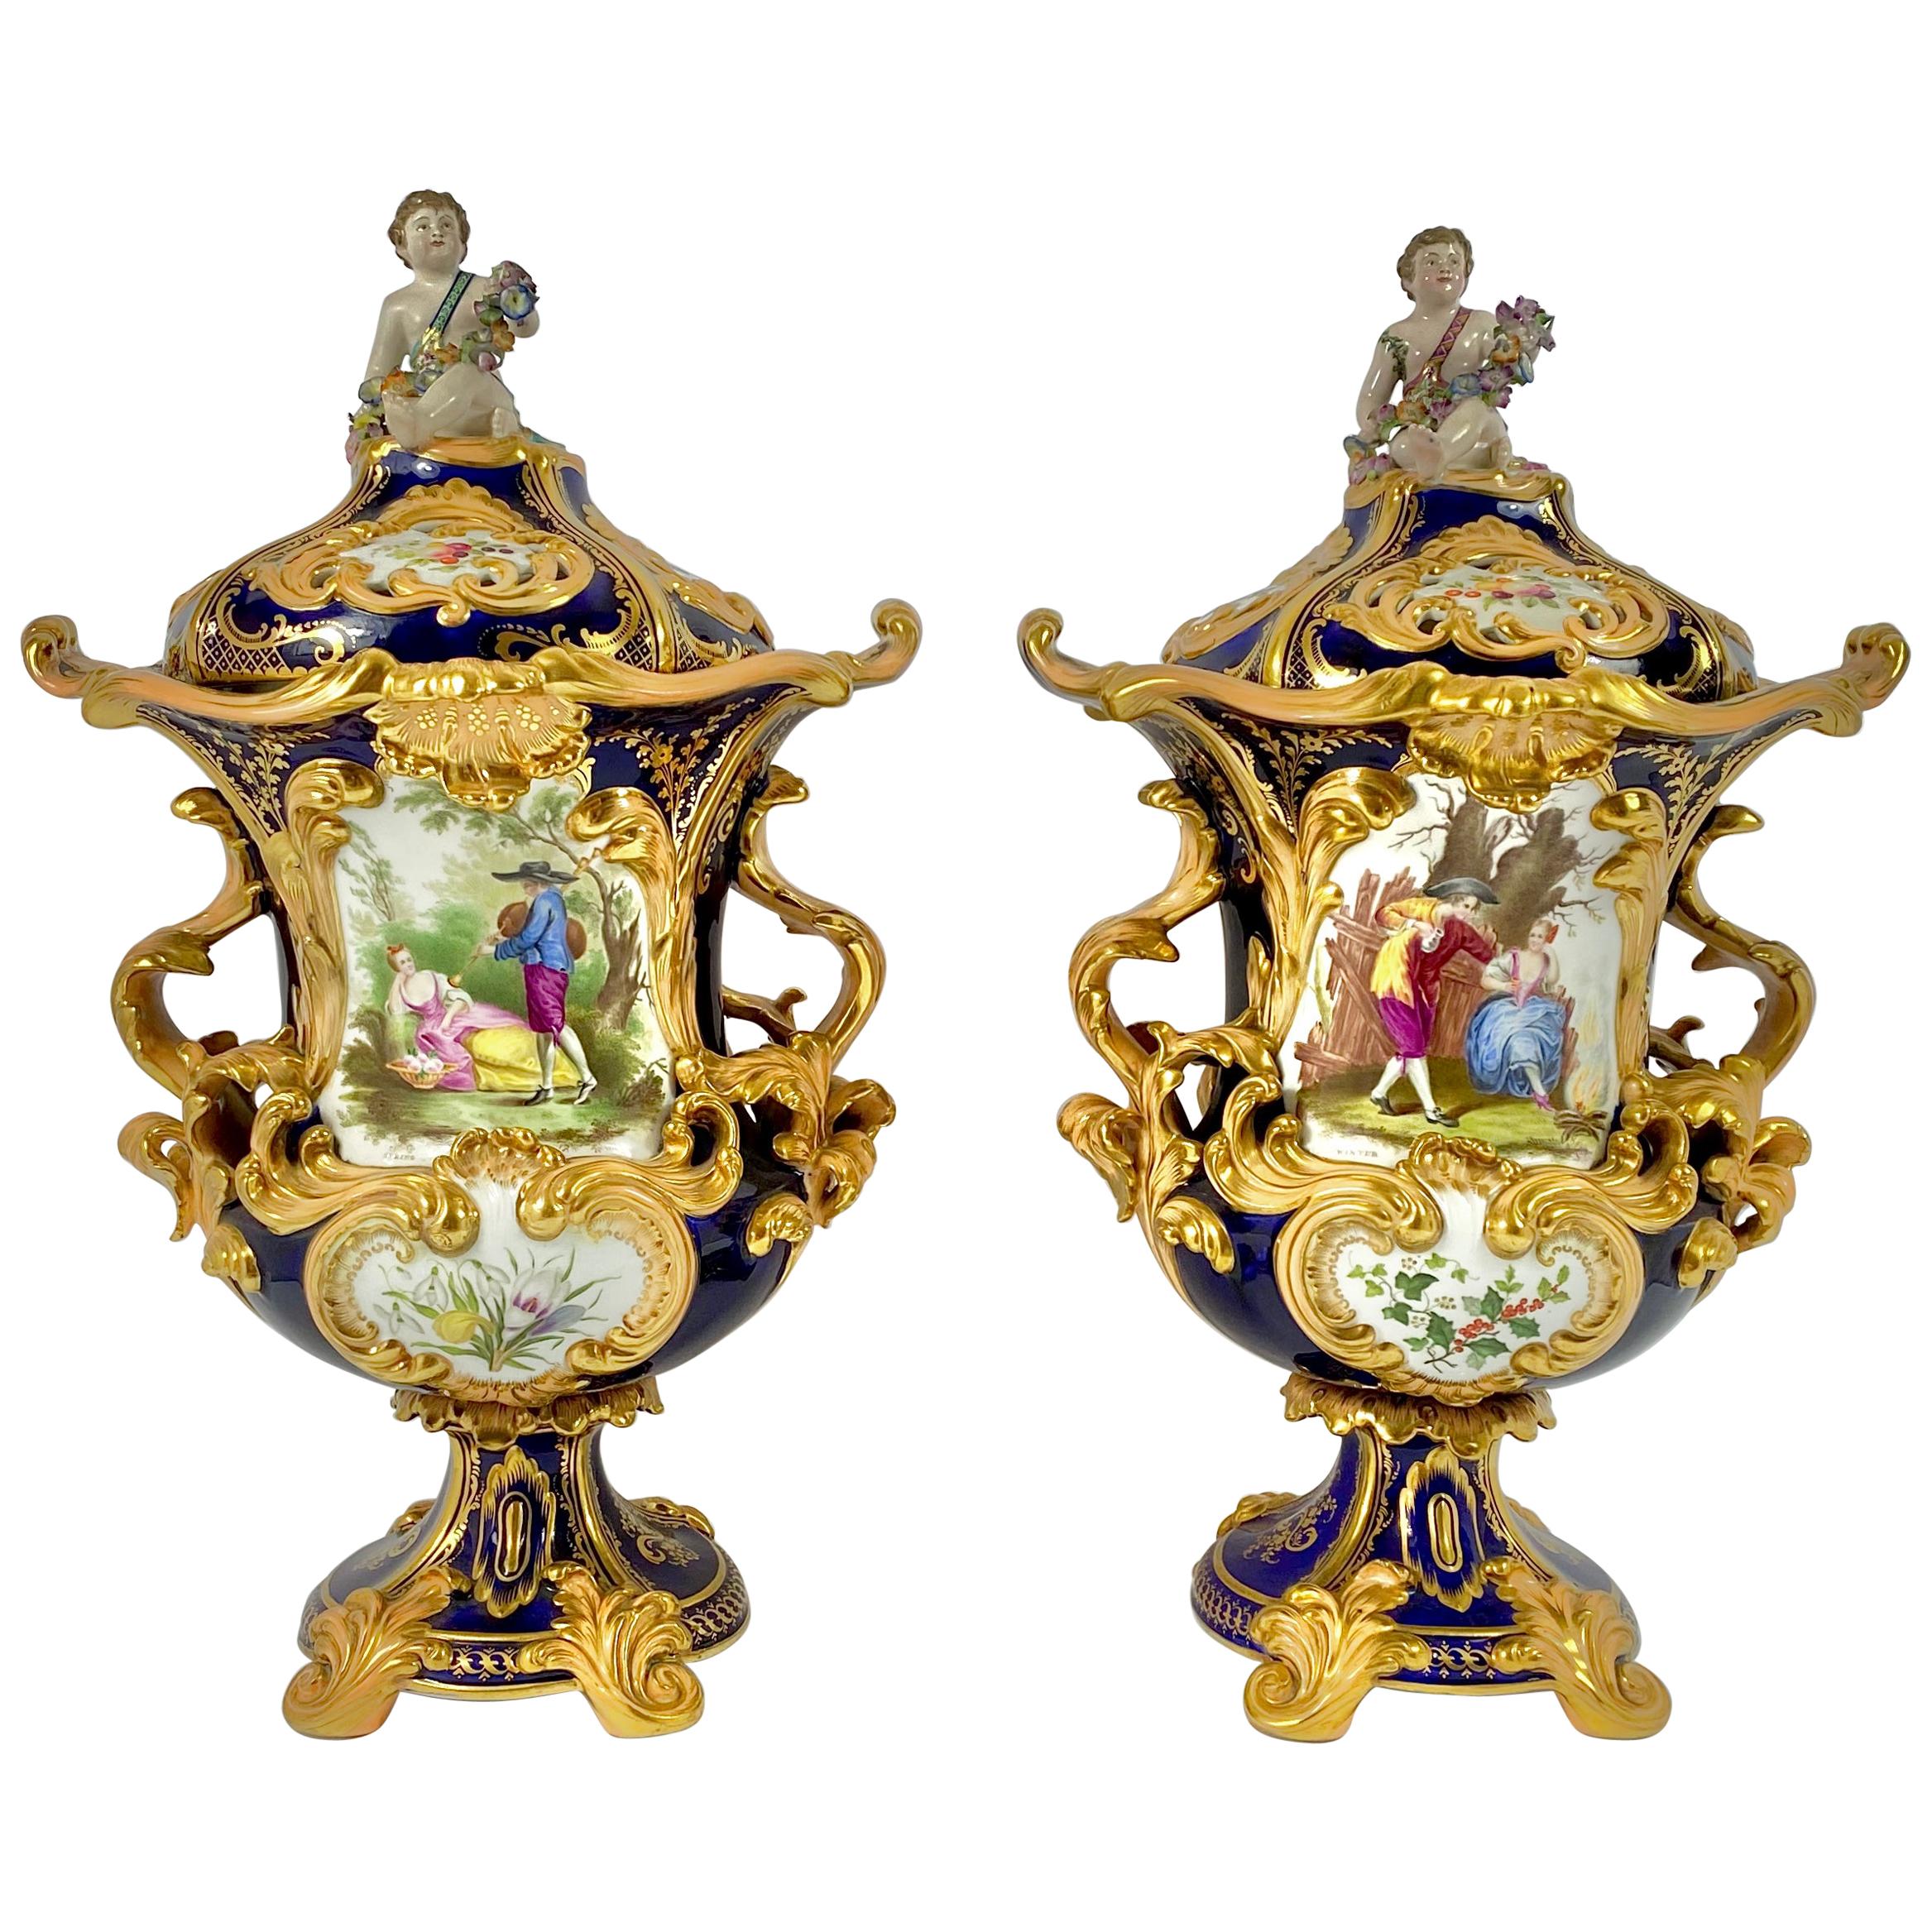 Fine pair Minton porcelain vases & covers, ‘Four Seasons’ c. 1830.